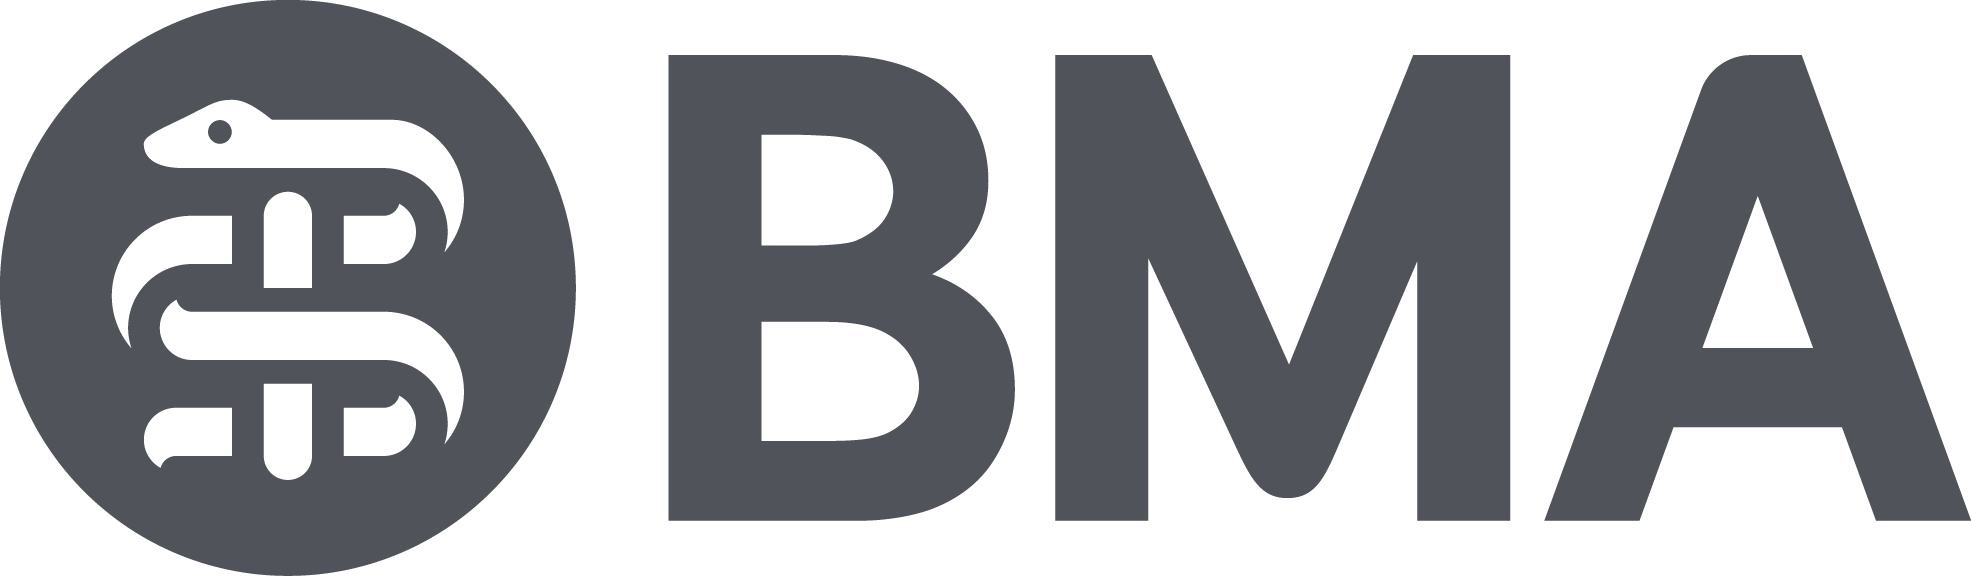 The BMA logo